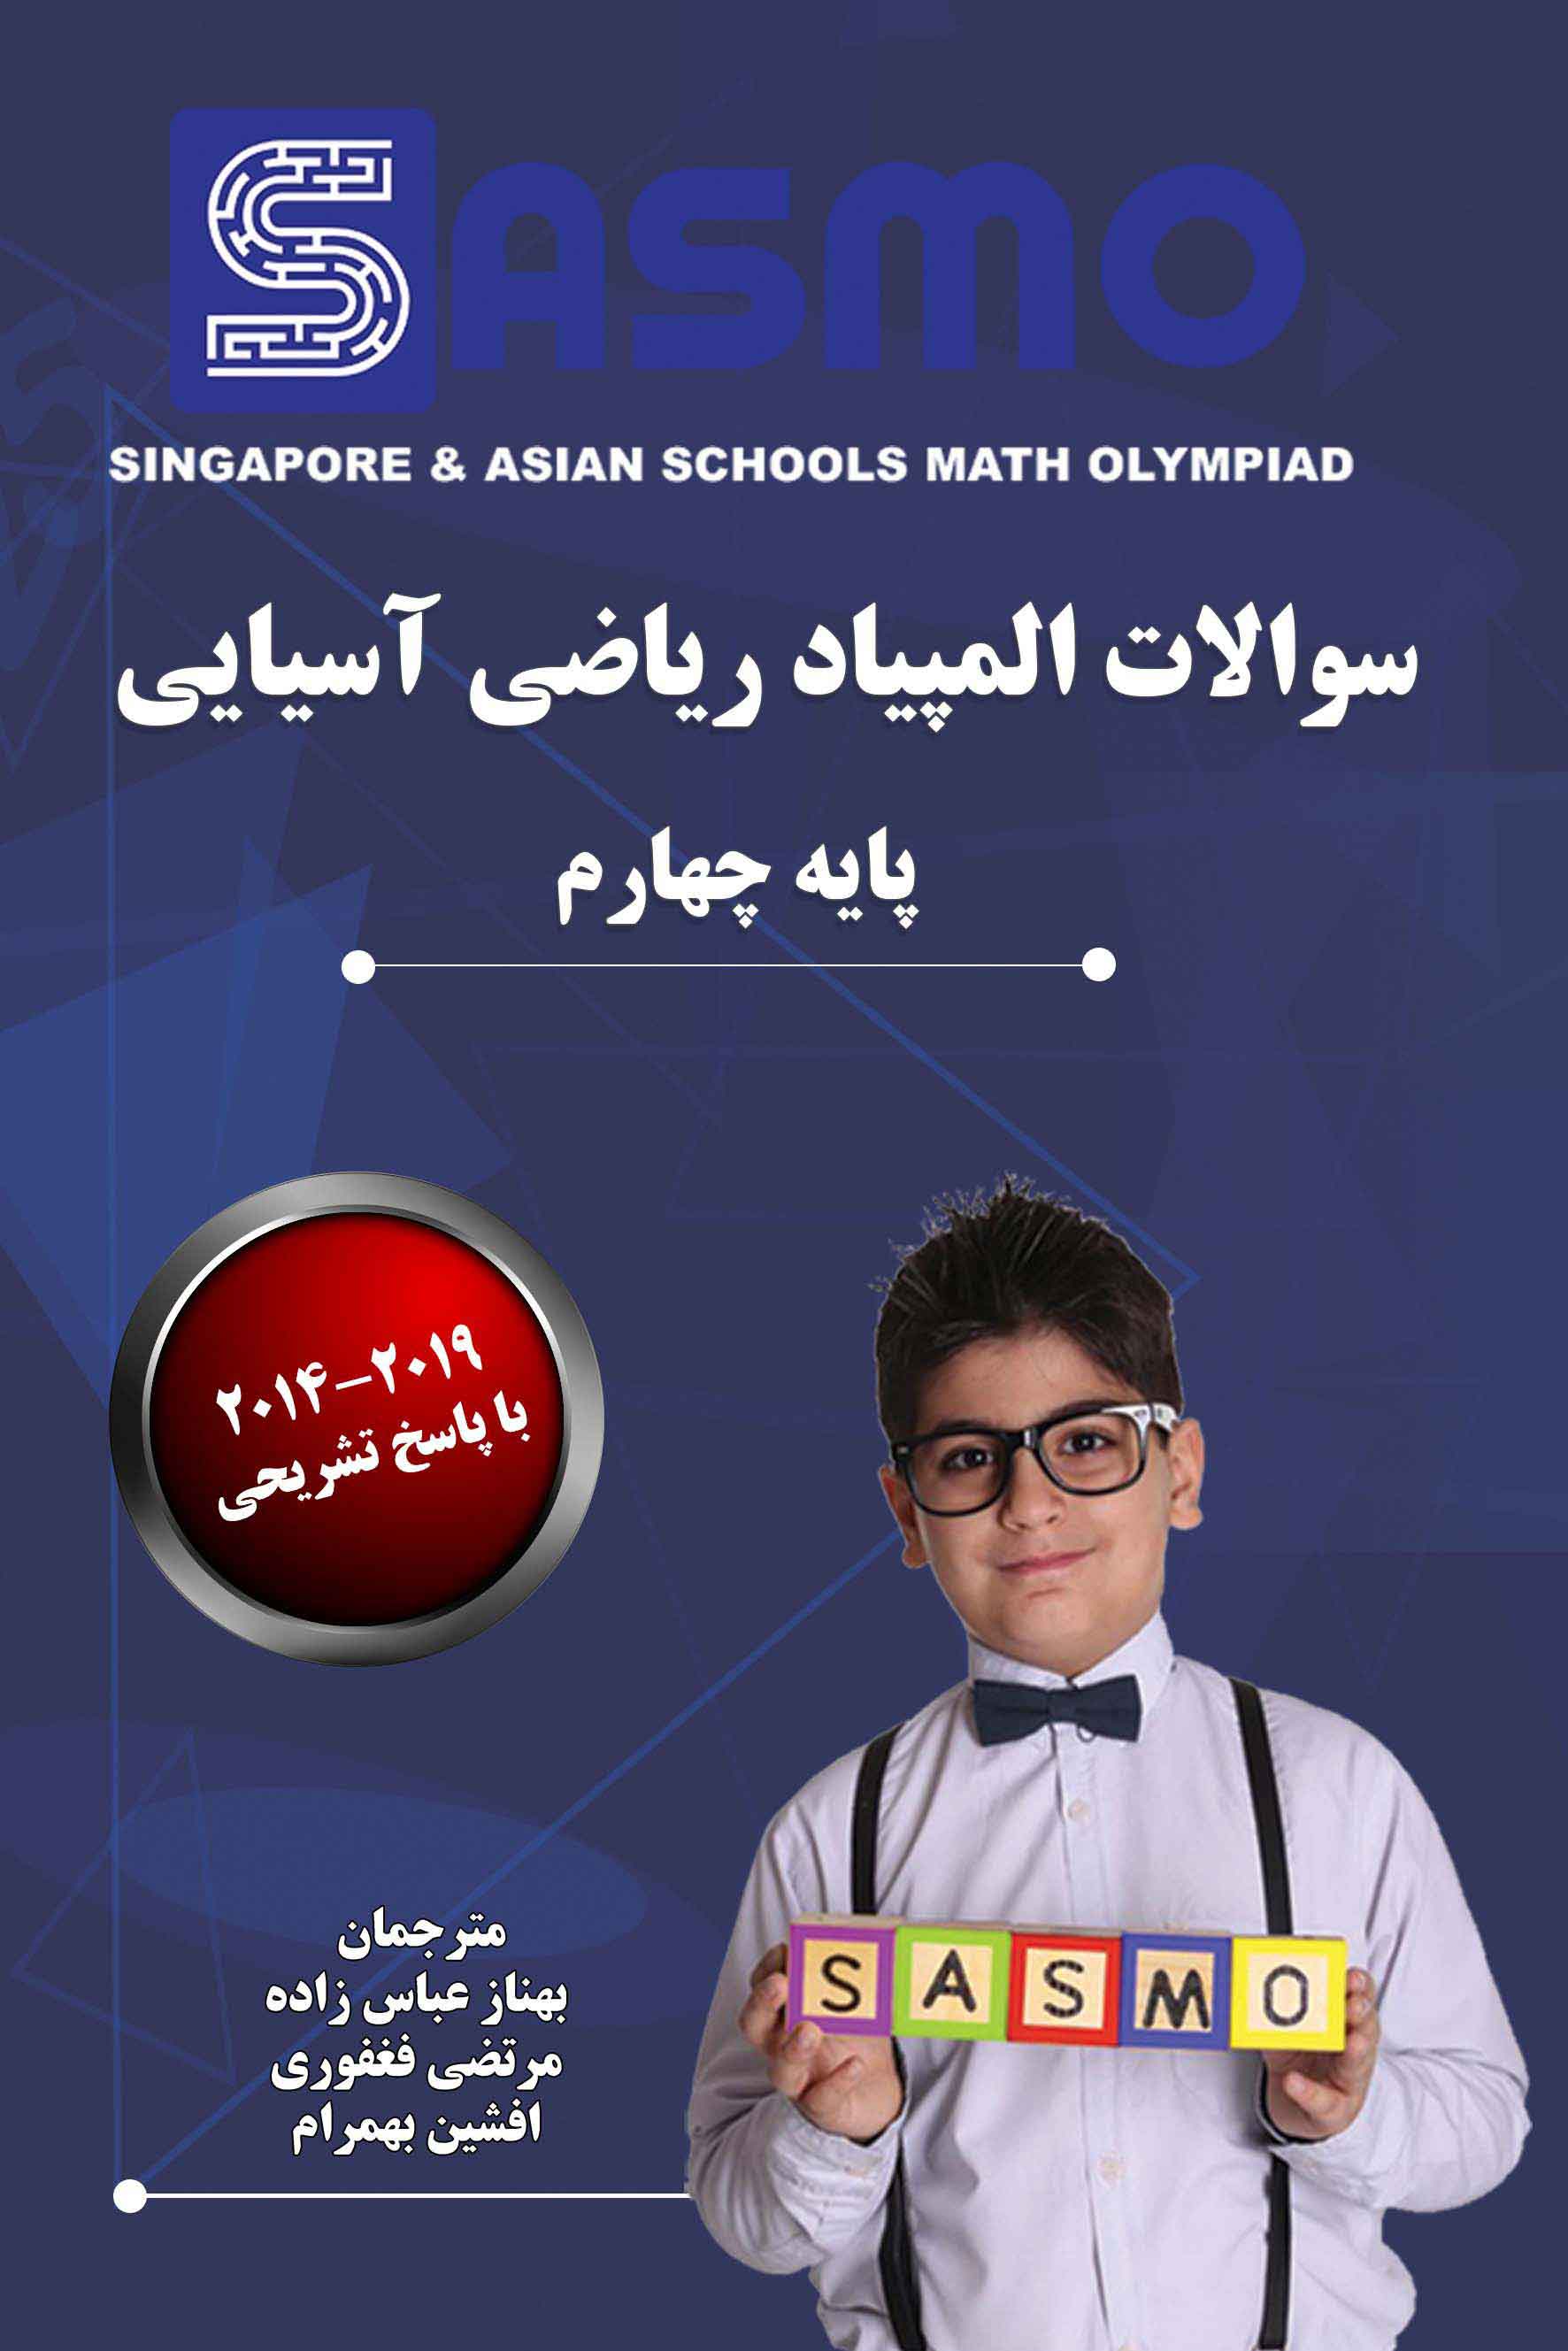 سوالات المپیاد ریاضی آسیایی ساسمو  - 2019-2014 - پایه چهارم